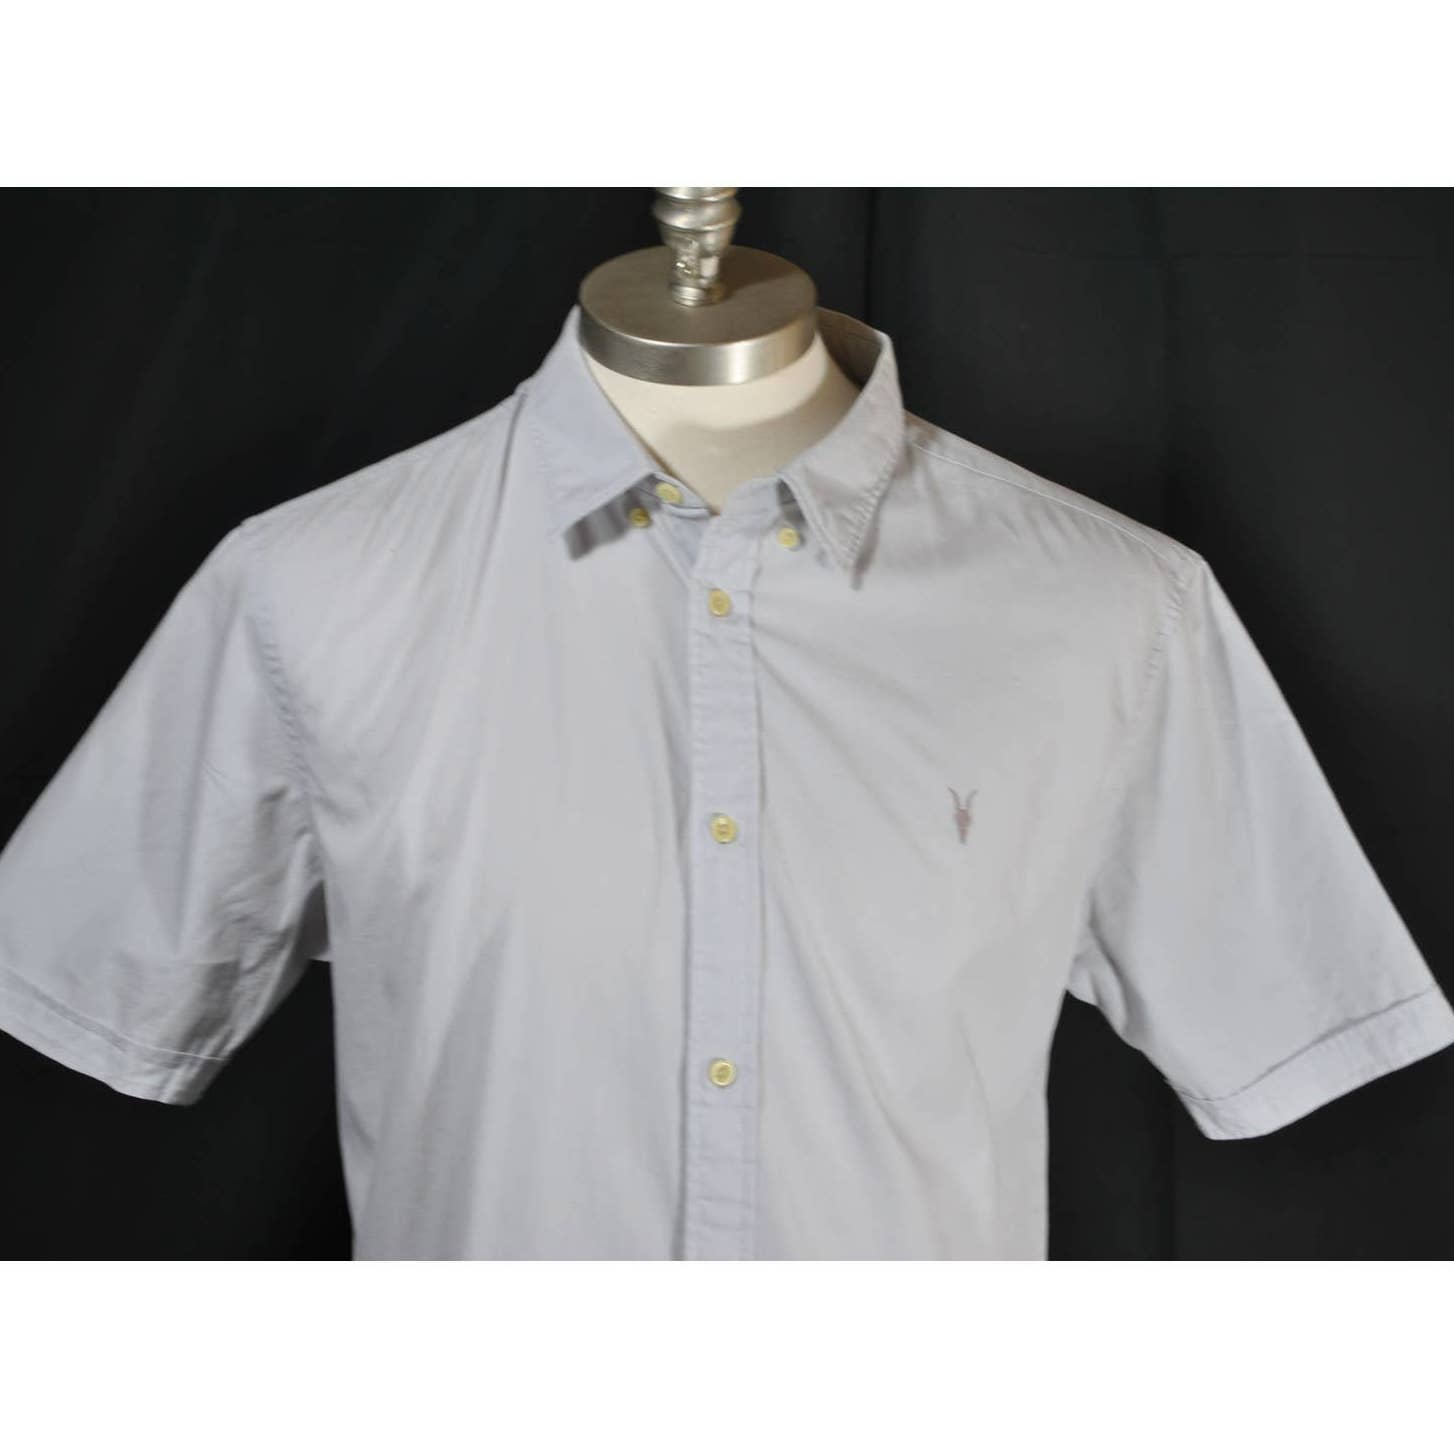 AllSaints Light Gray Short Sleeve Button Up Shirt - XL